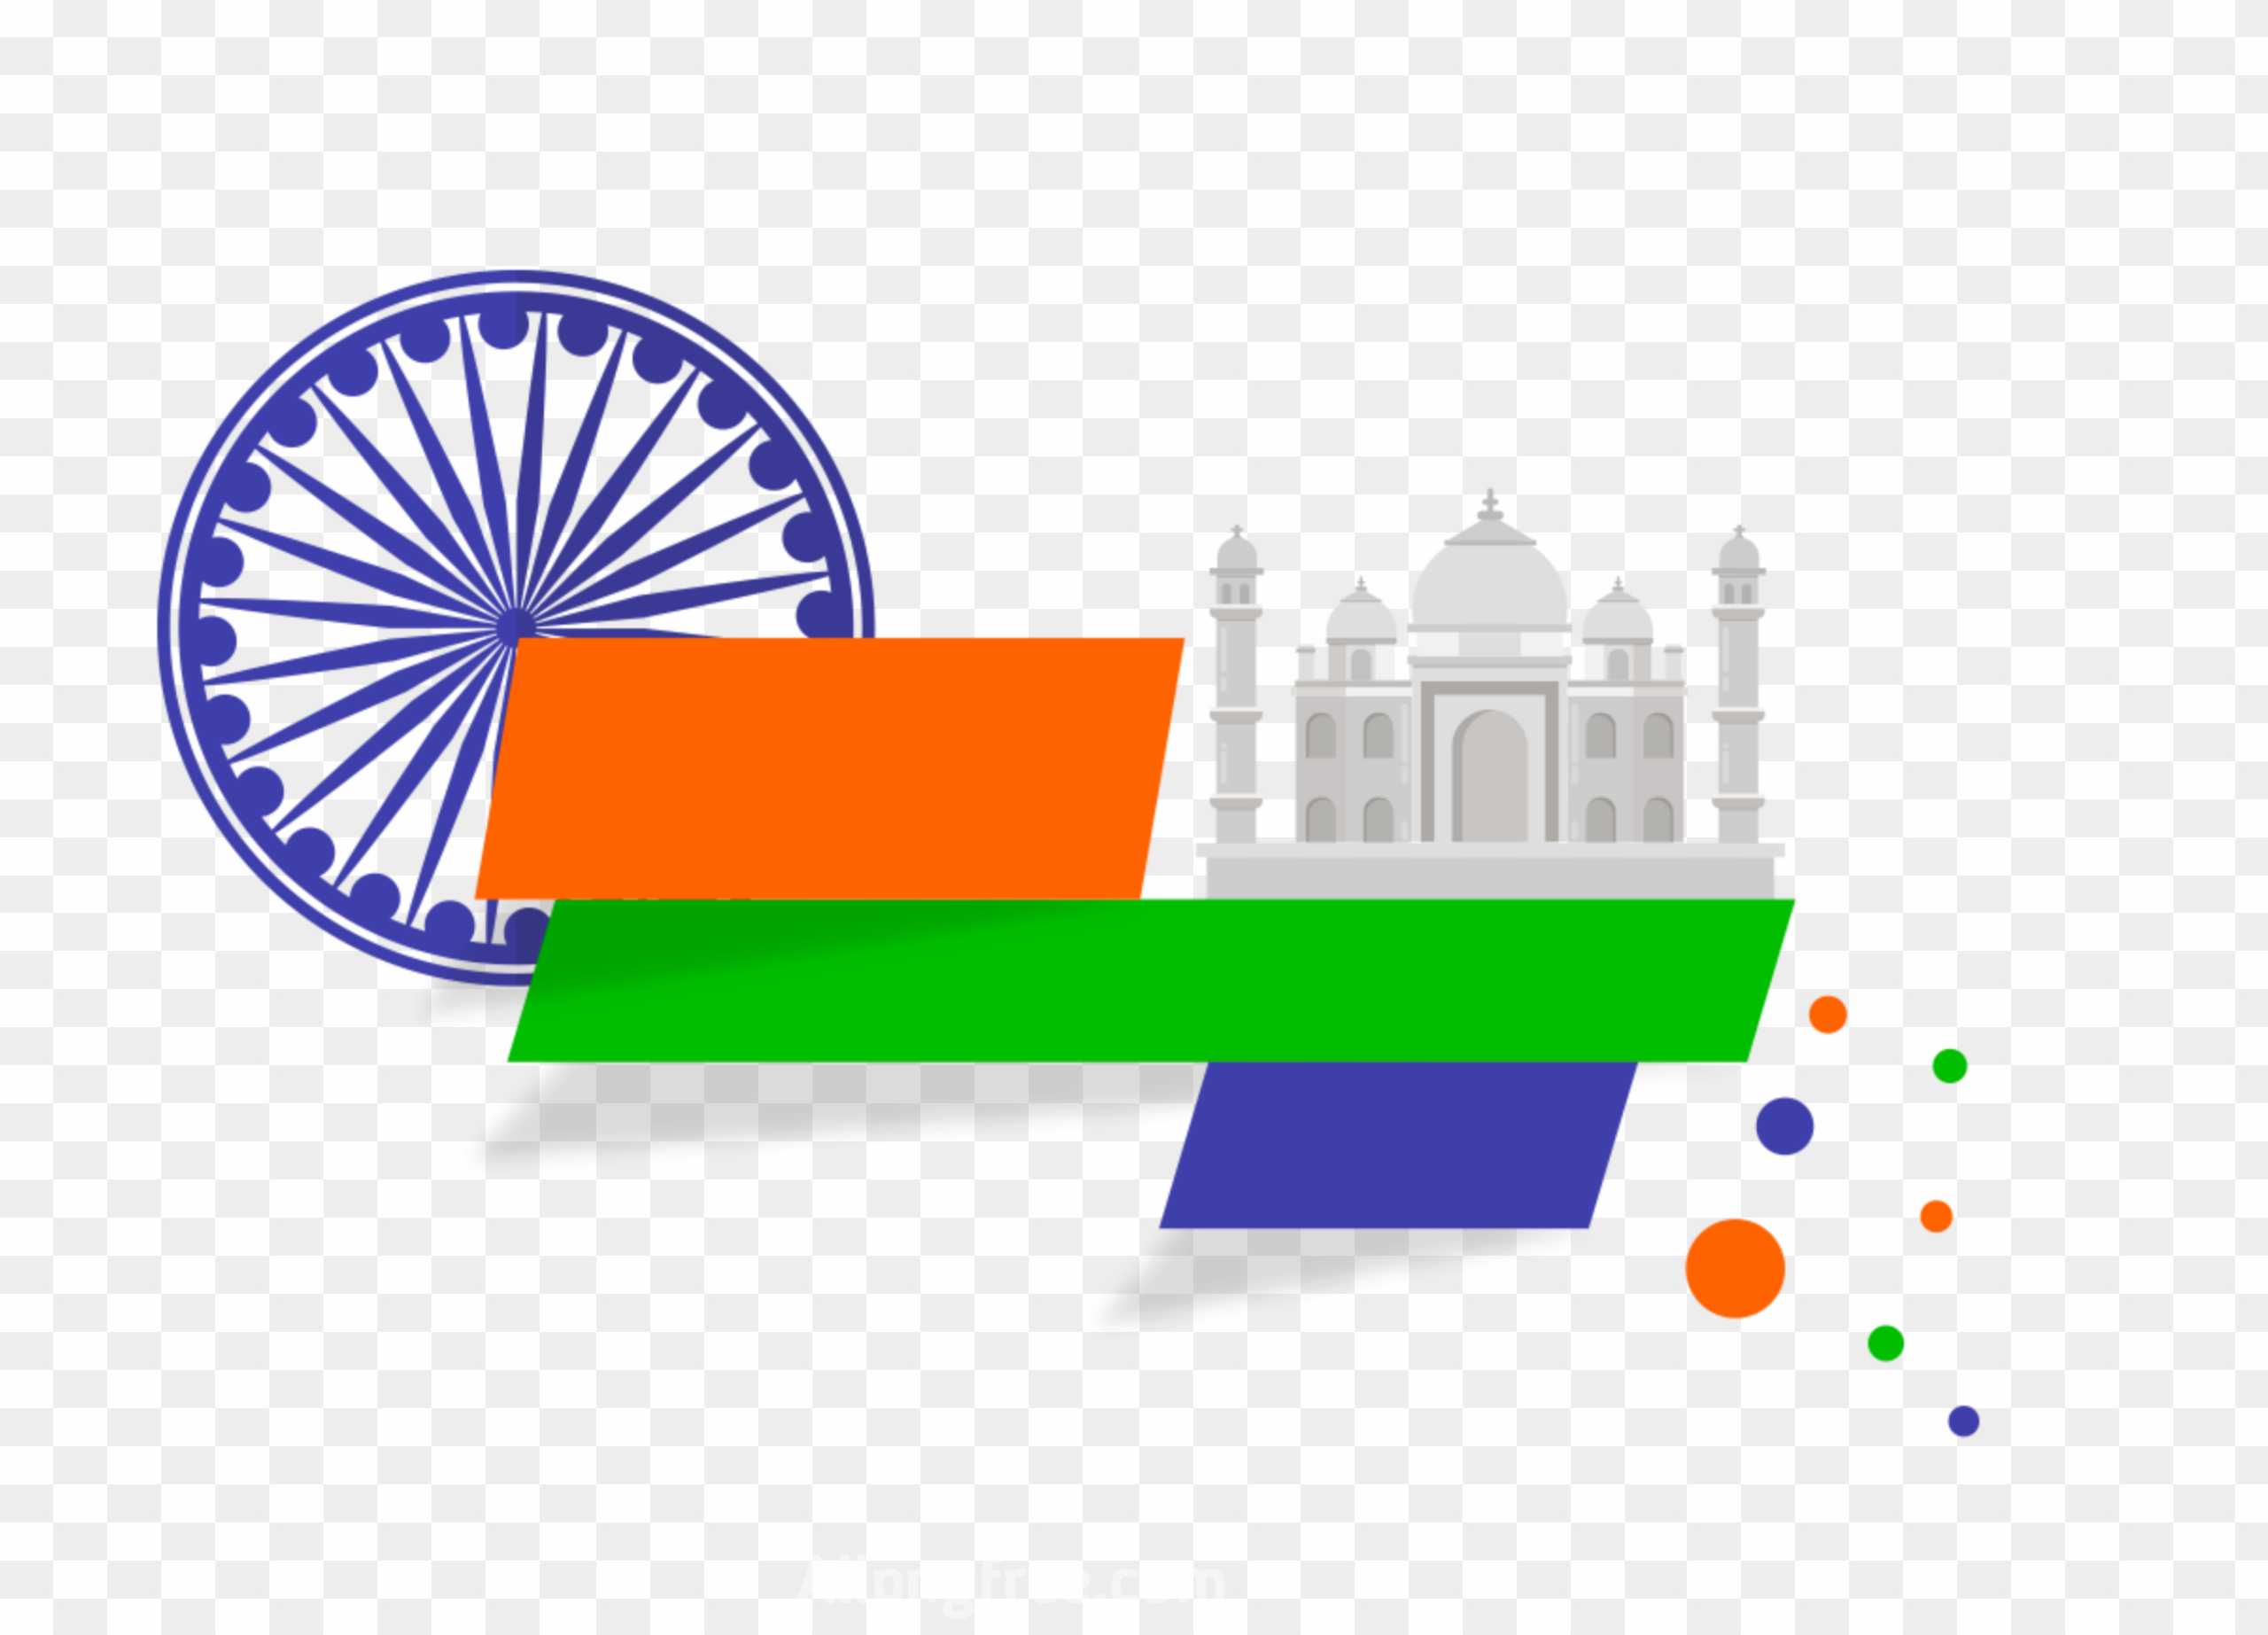 26 Tháng Một là một ngày quan trọng cho người dân Ấn Độ. Hãy cùng đón xem những hình ảnh liên quan đến ngày này, để hiểu thêm về tinh thần đoàn kết và lòng yêu nước của người dân Ấn Độ.